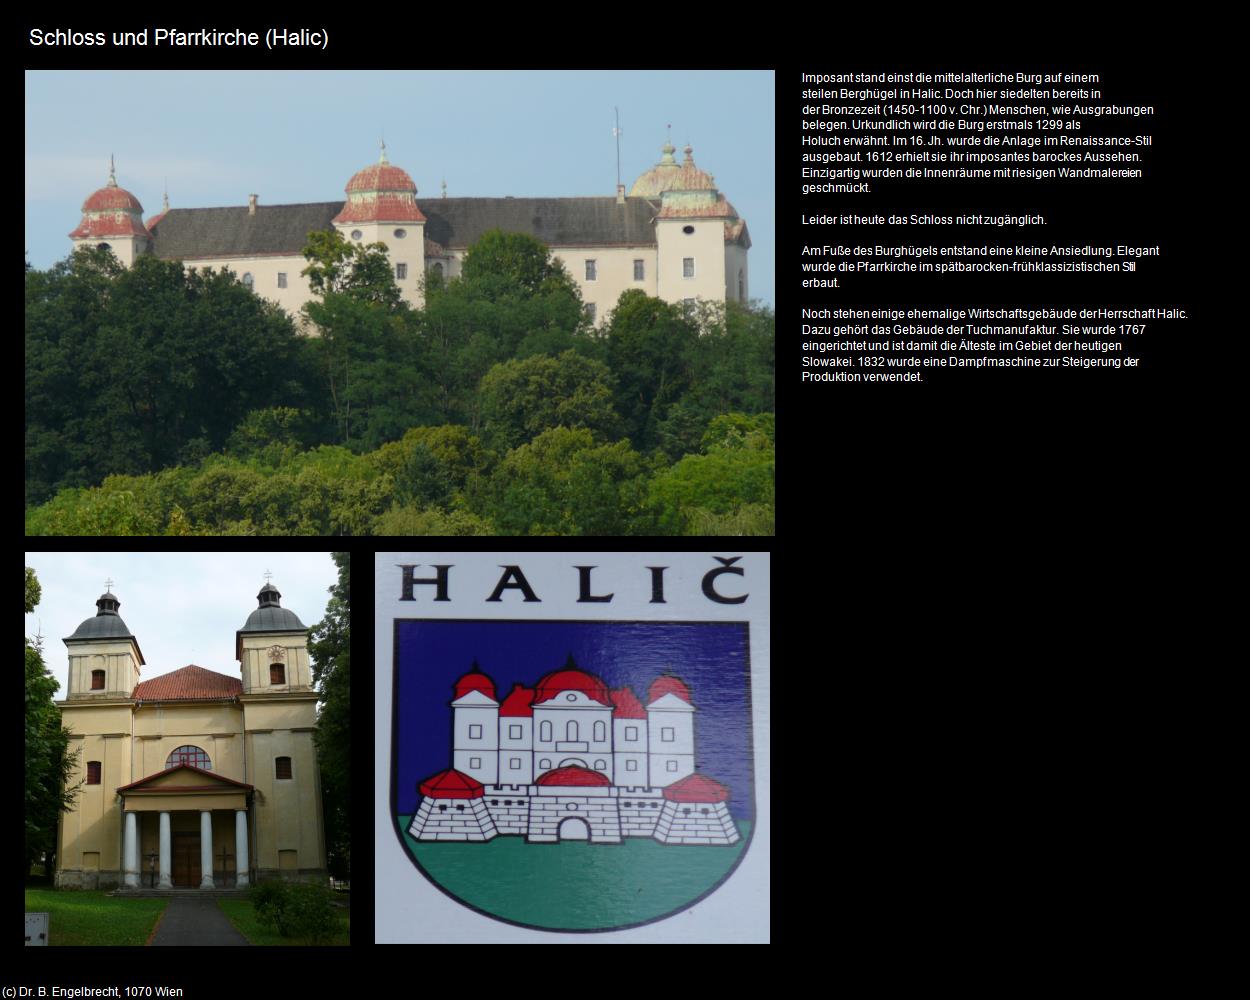 Schloss und Pfk.  (Halic) in SLOWAKEI